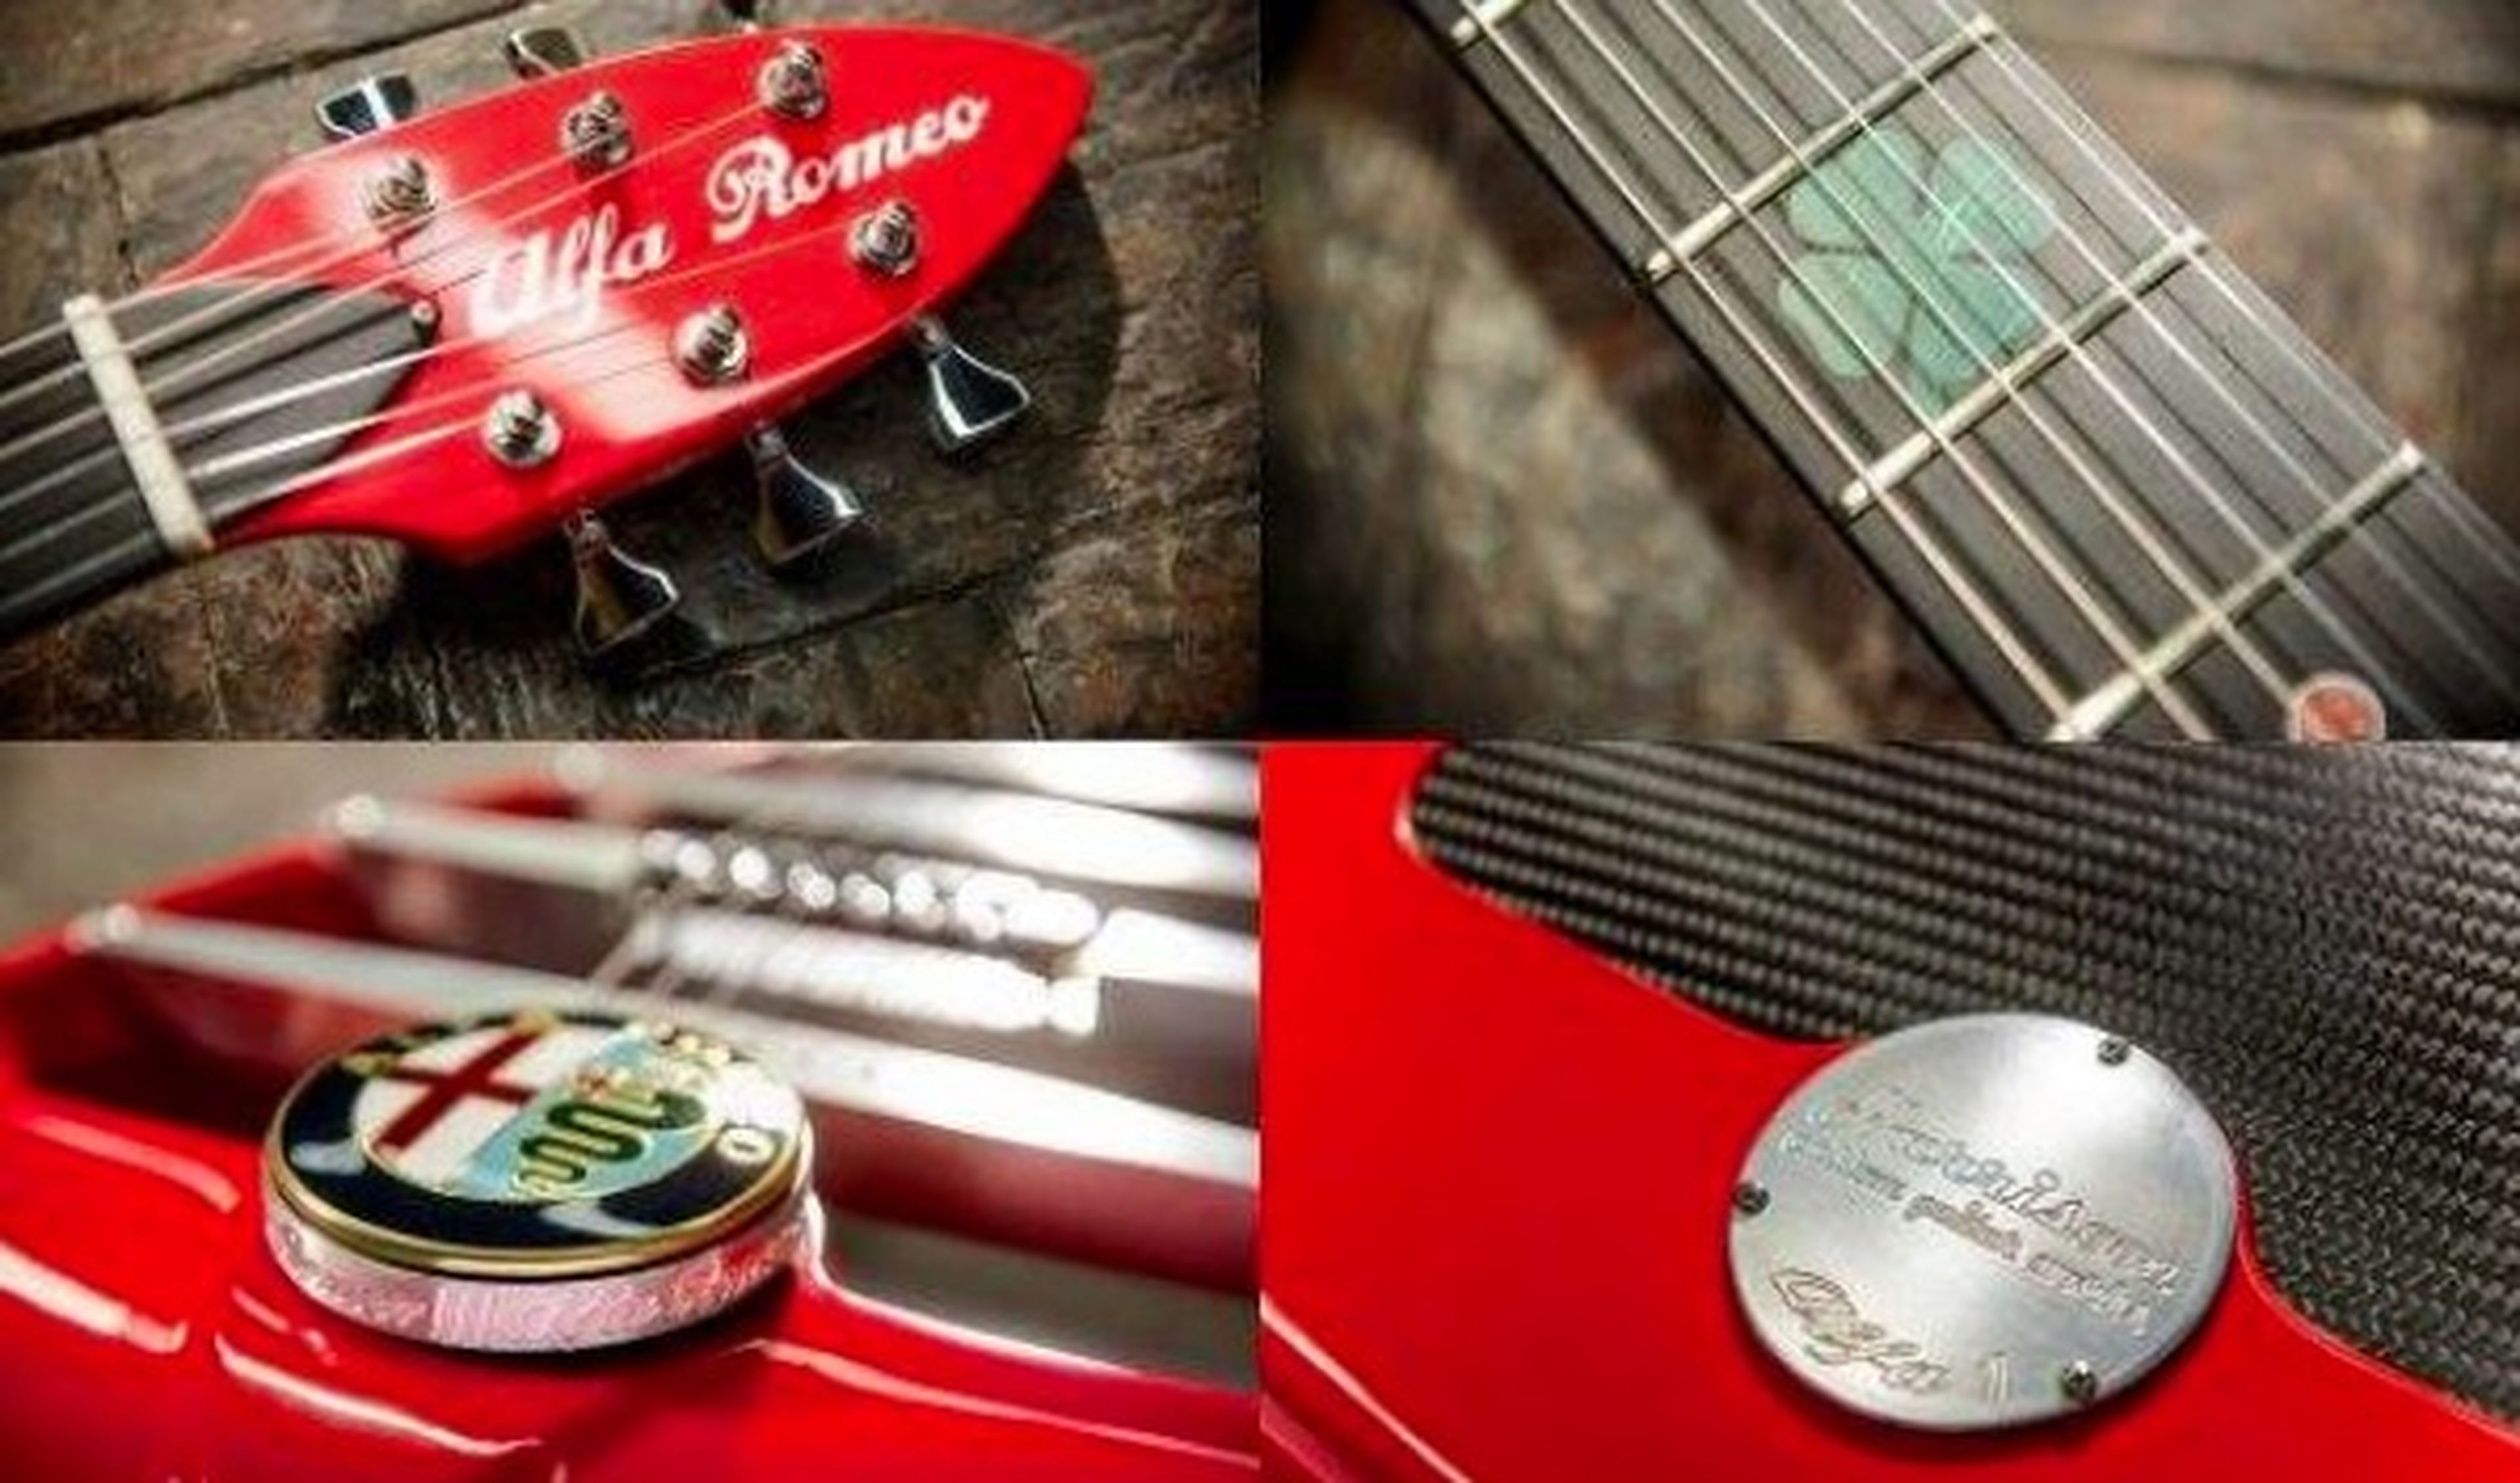 La guitarra de Alfa Romeo